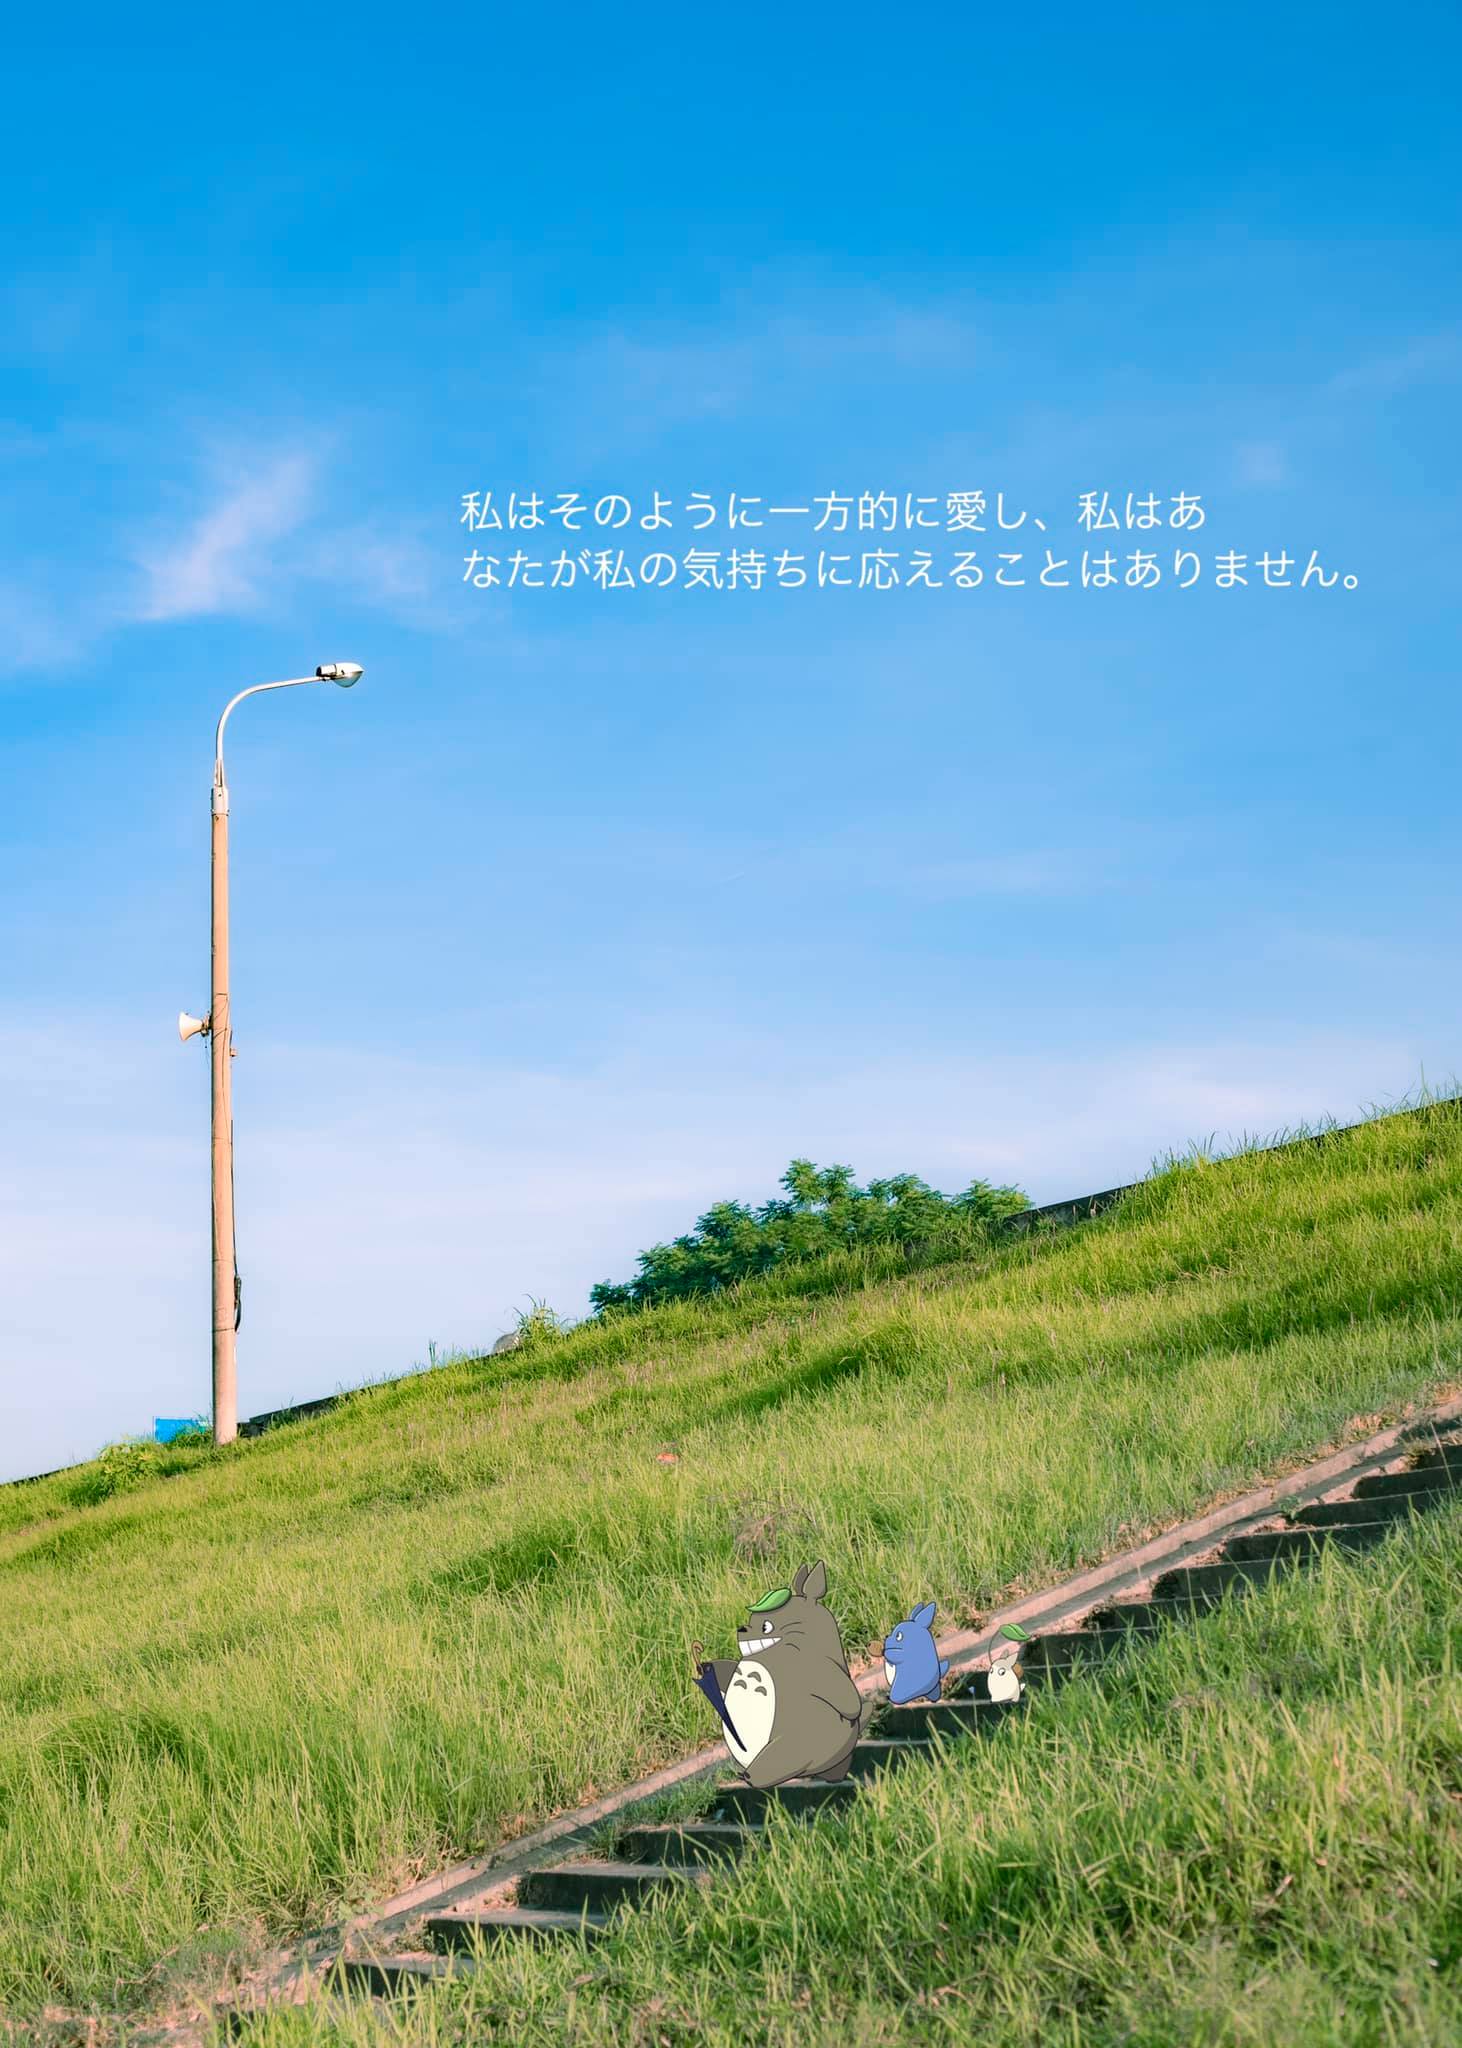 triền cỏ xanh như phim anime Nhật Bản ở gần Hà Nội